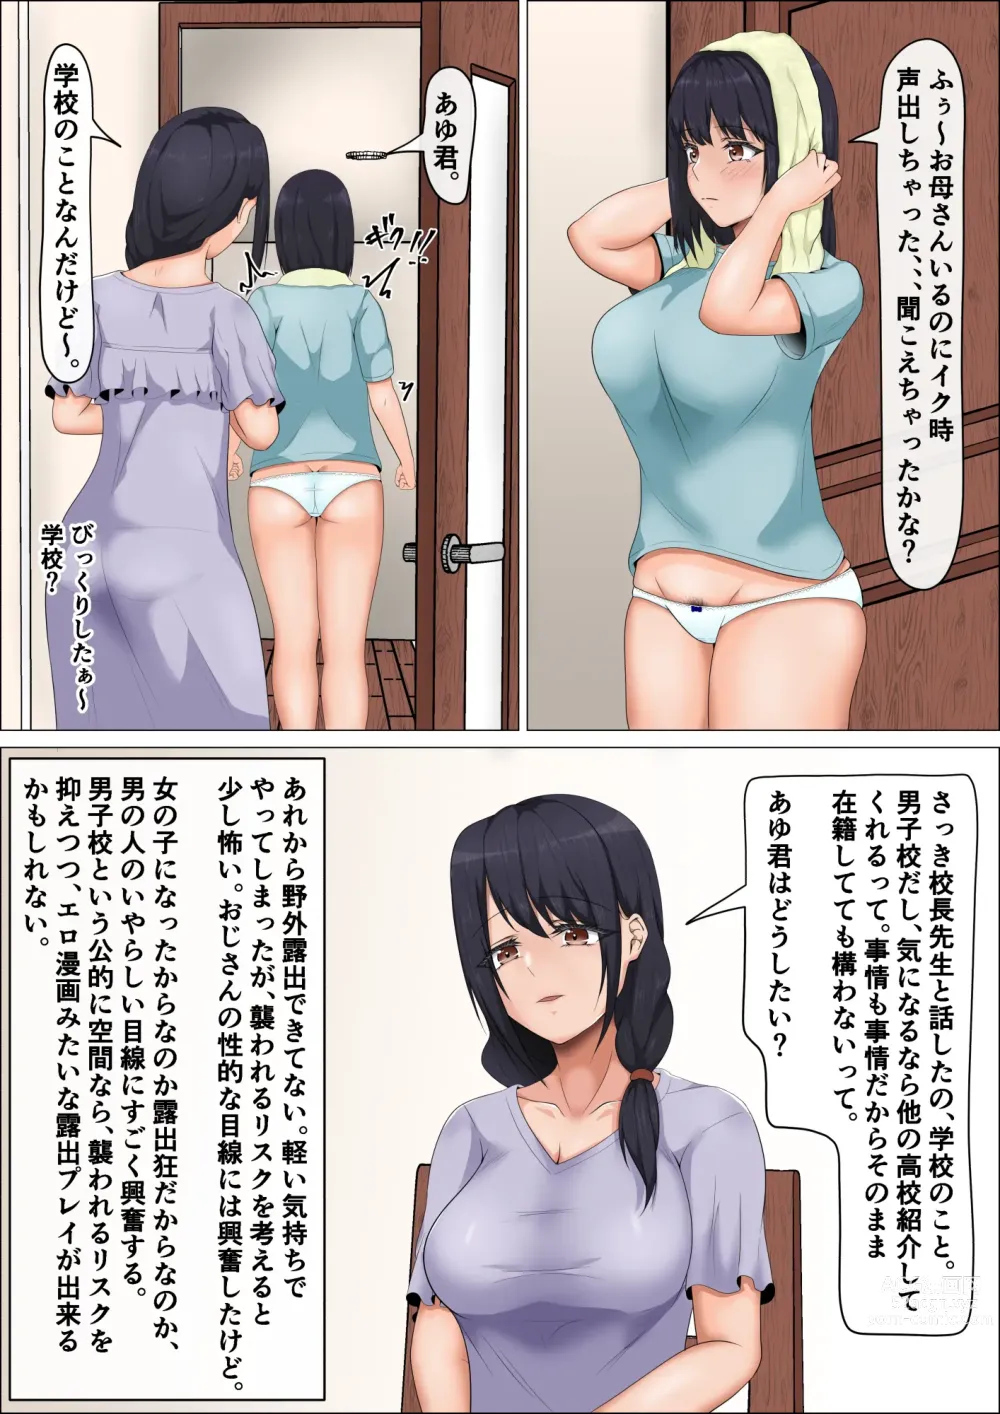 Page 6 of doujinshi Hentai Rosyutsukyou ga Onnanoko ni Nattara #2 Danshikou Hen